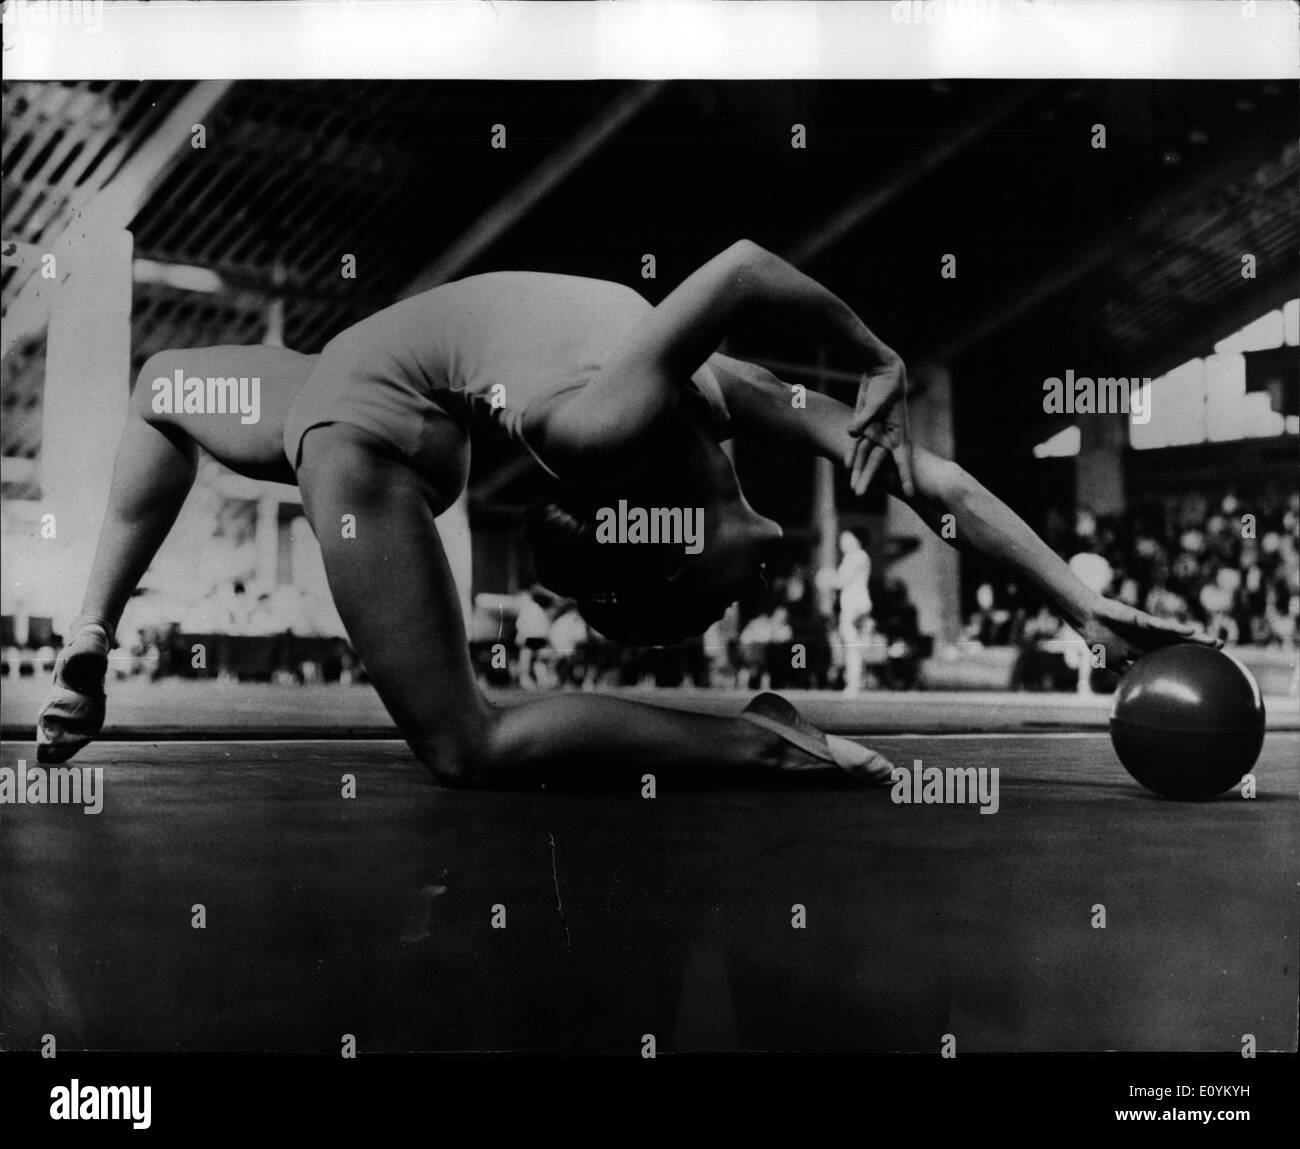 Sett. 09, 1970 - Studio di un campione.: A fine di studio del campione del mondo di ginnastica moderna per 1969 - Maria Gigova - che ha Foto Stock